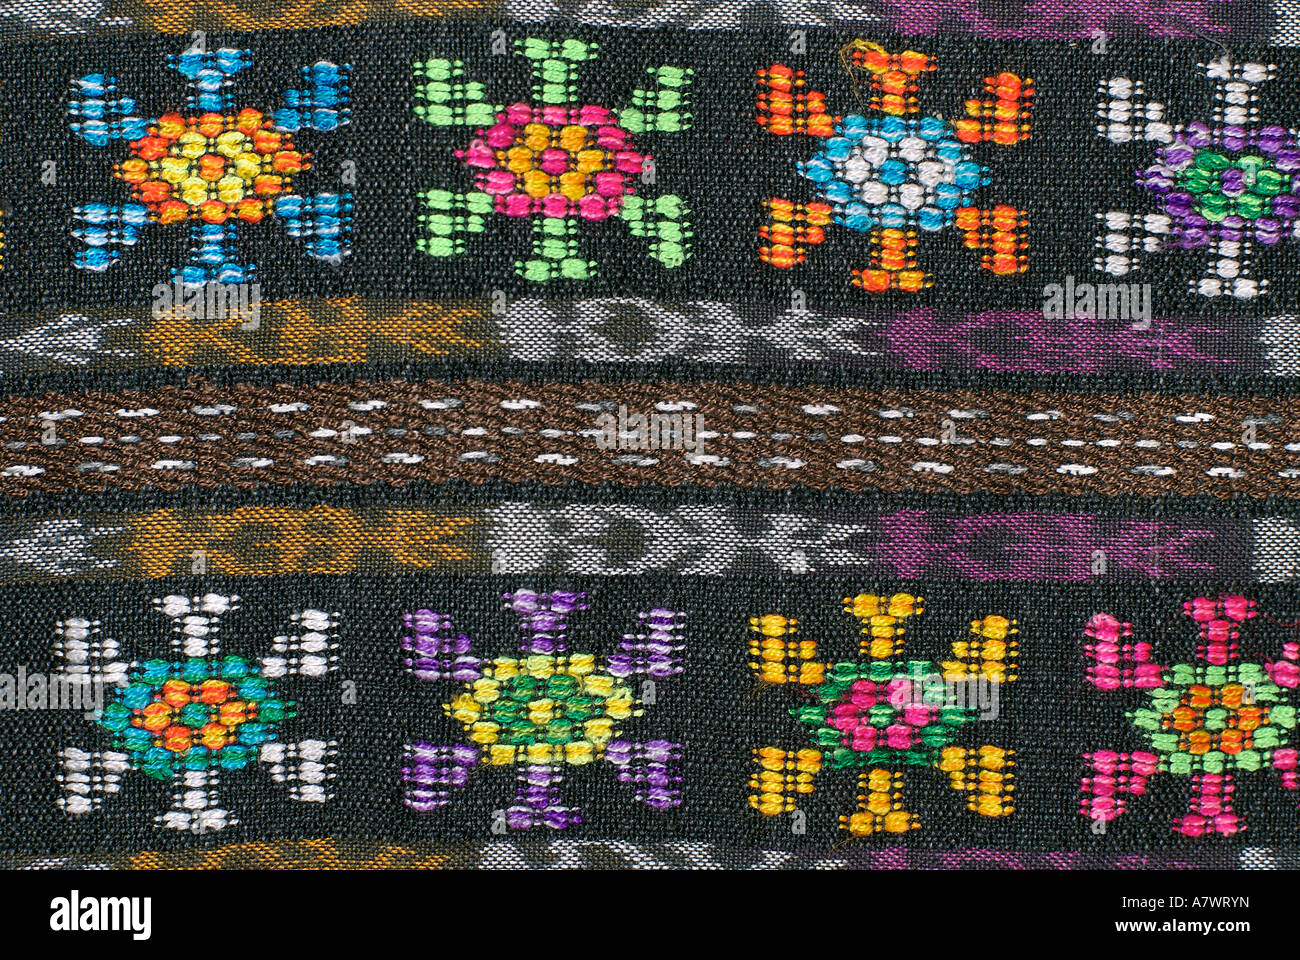 Détail de la jupe en brocart de Zunil Guatemala modélisation et l'ikat géométrique Banque D'Images